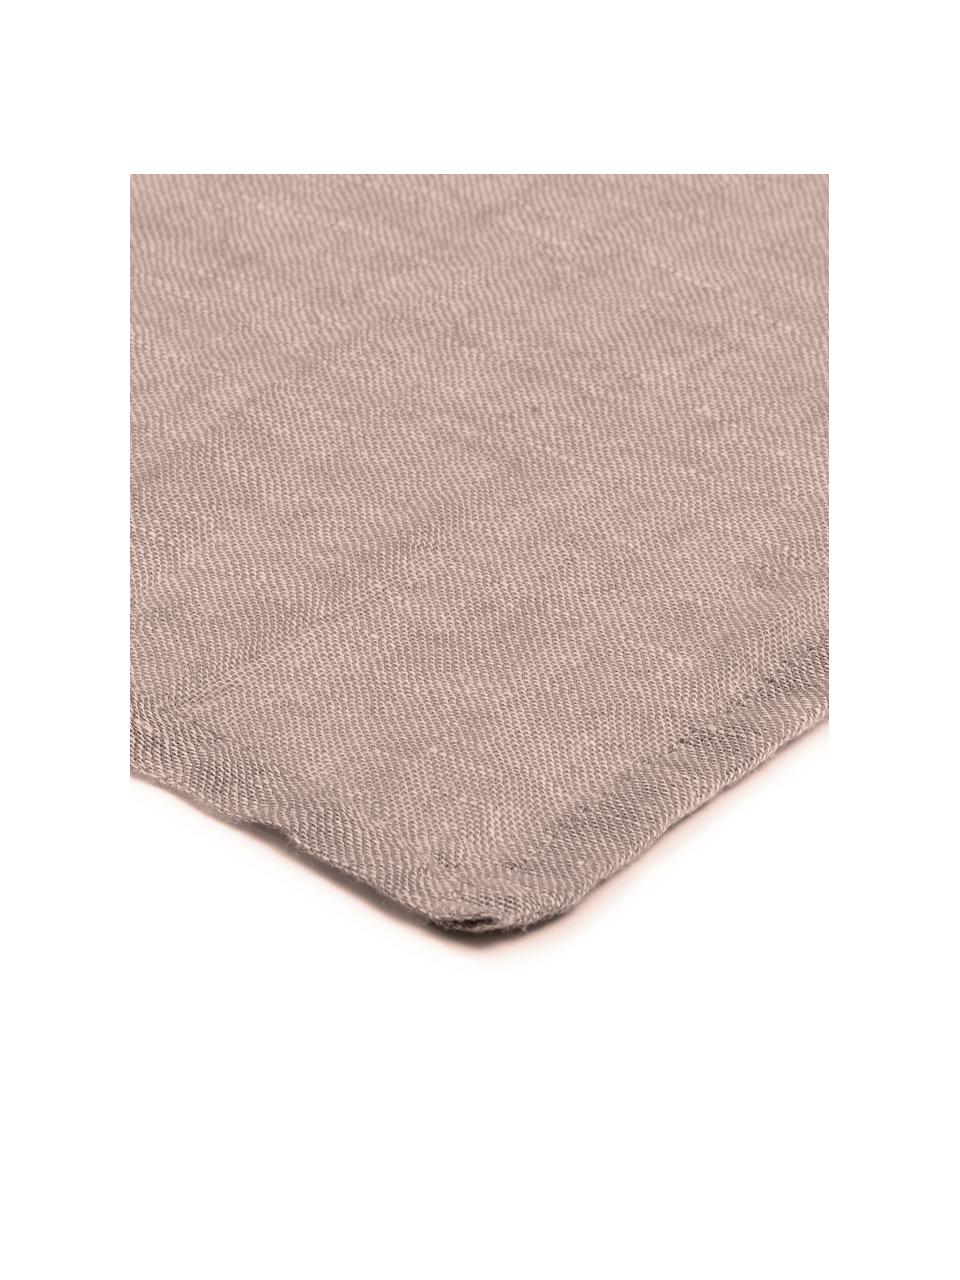 Serwetka z tkaniny Kinia, 4 szt., 55% bawełna, 45% len, Brudny różowy, S 45 x D 45 cm